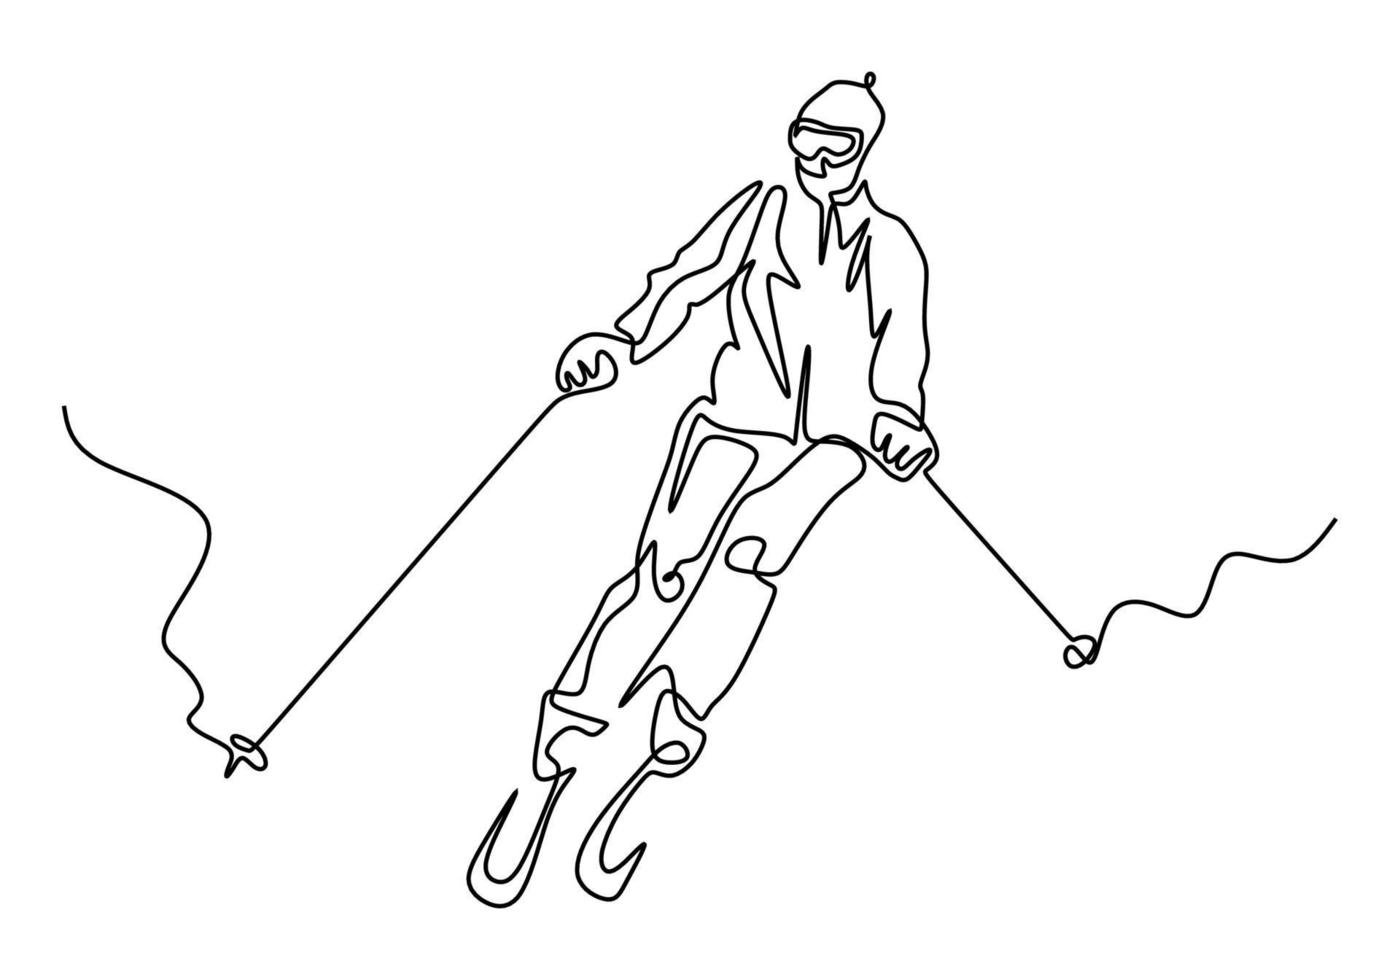 kontinuerlig ritning. alpinåkare som åker utför. vintersport. vektor